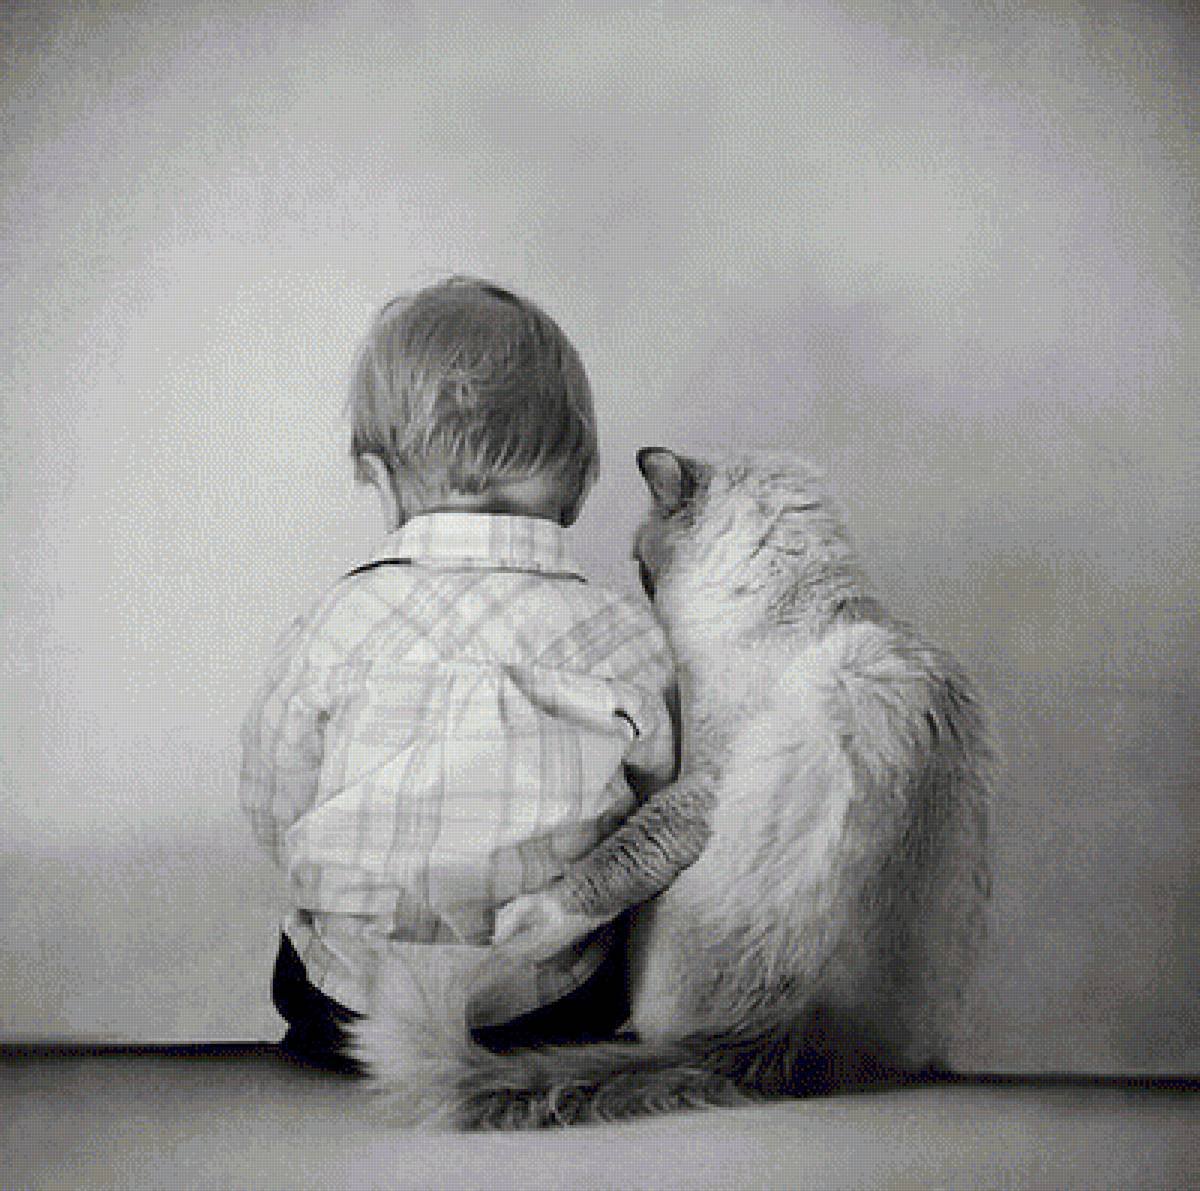 Будем просто дружить. Мальчик обнимает кота. Обнимашки людей. Поддержка в трудную минуту. Объятия животных.